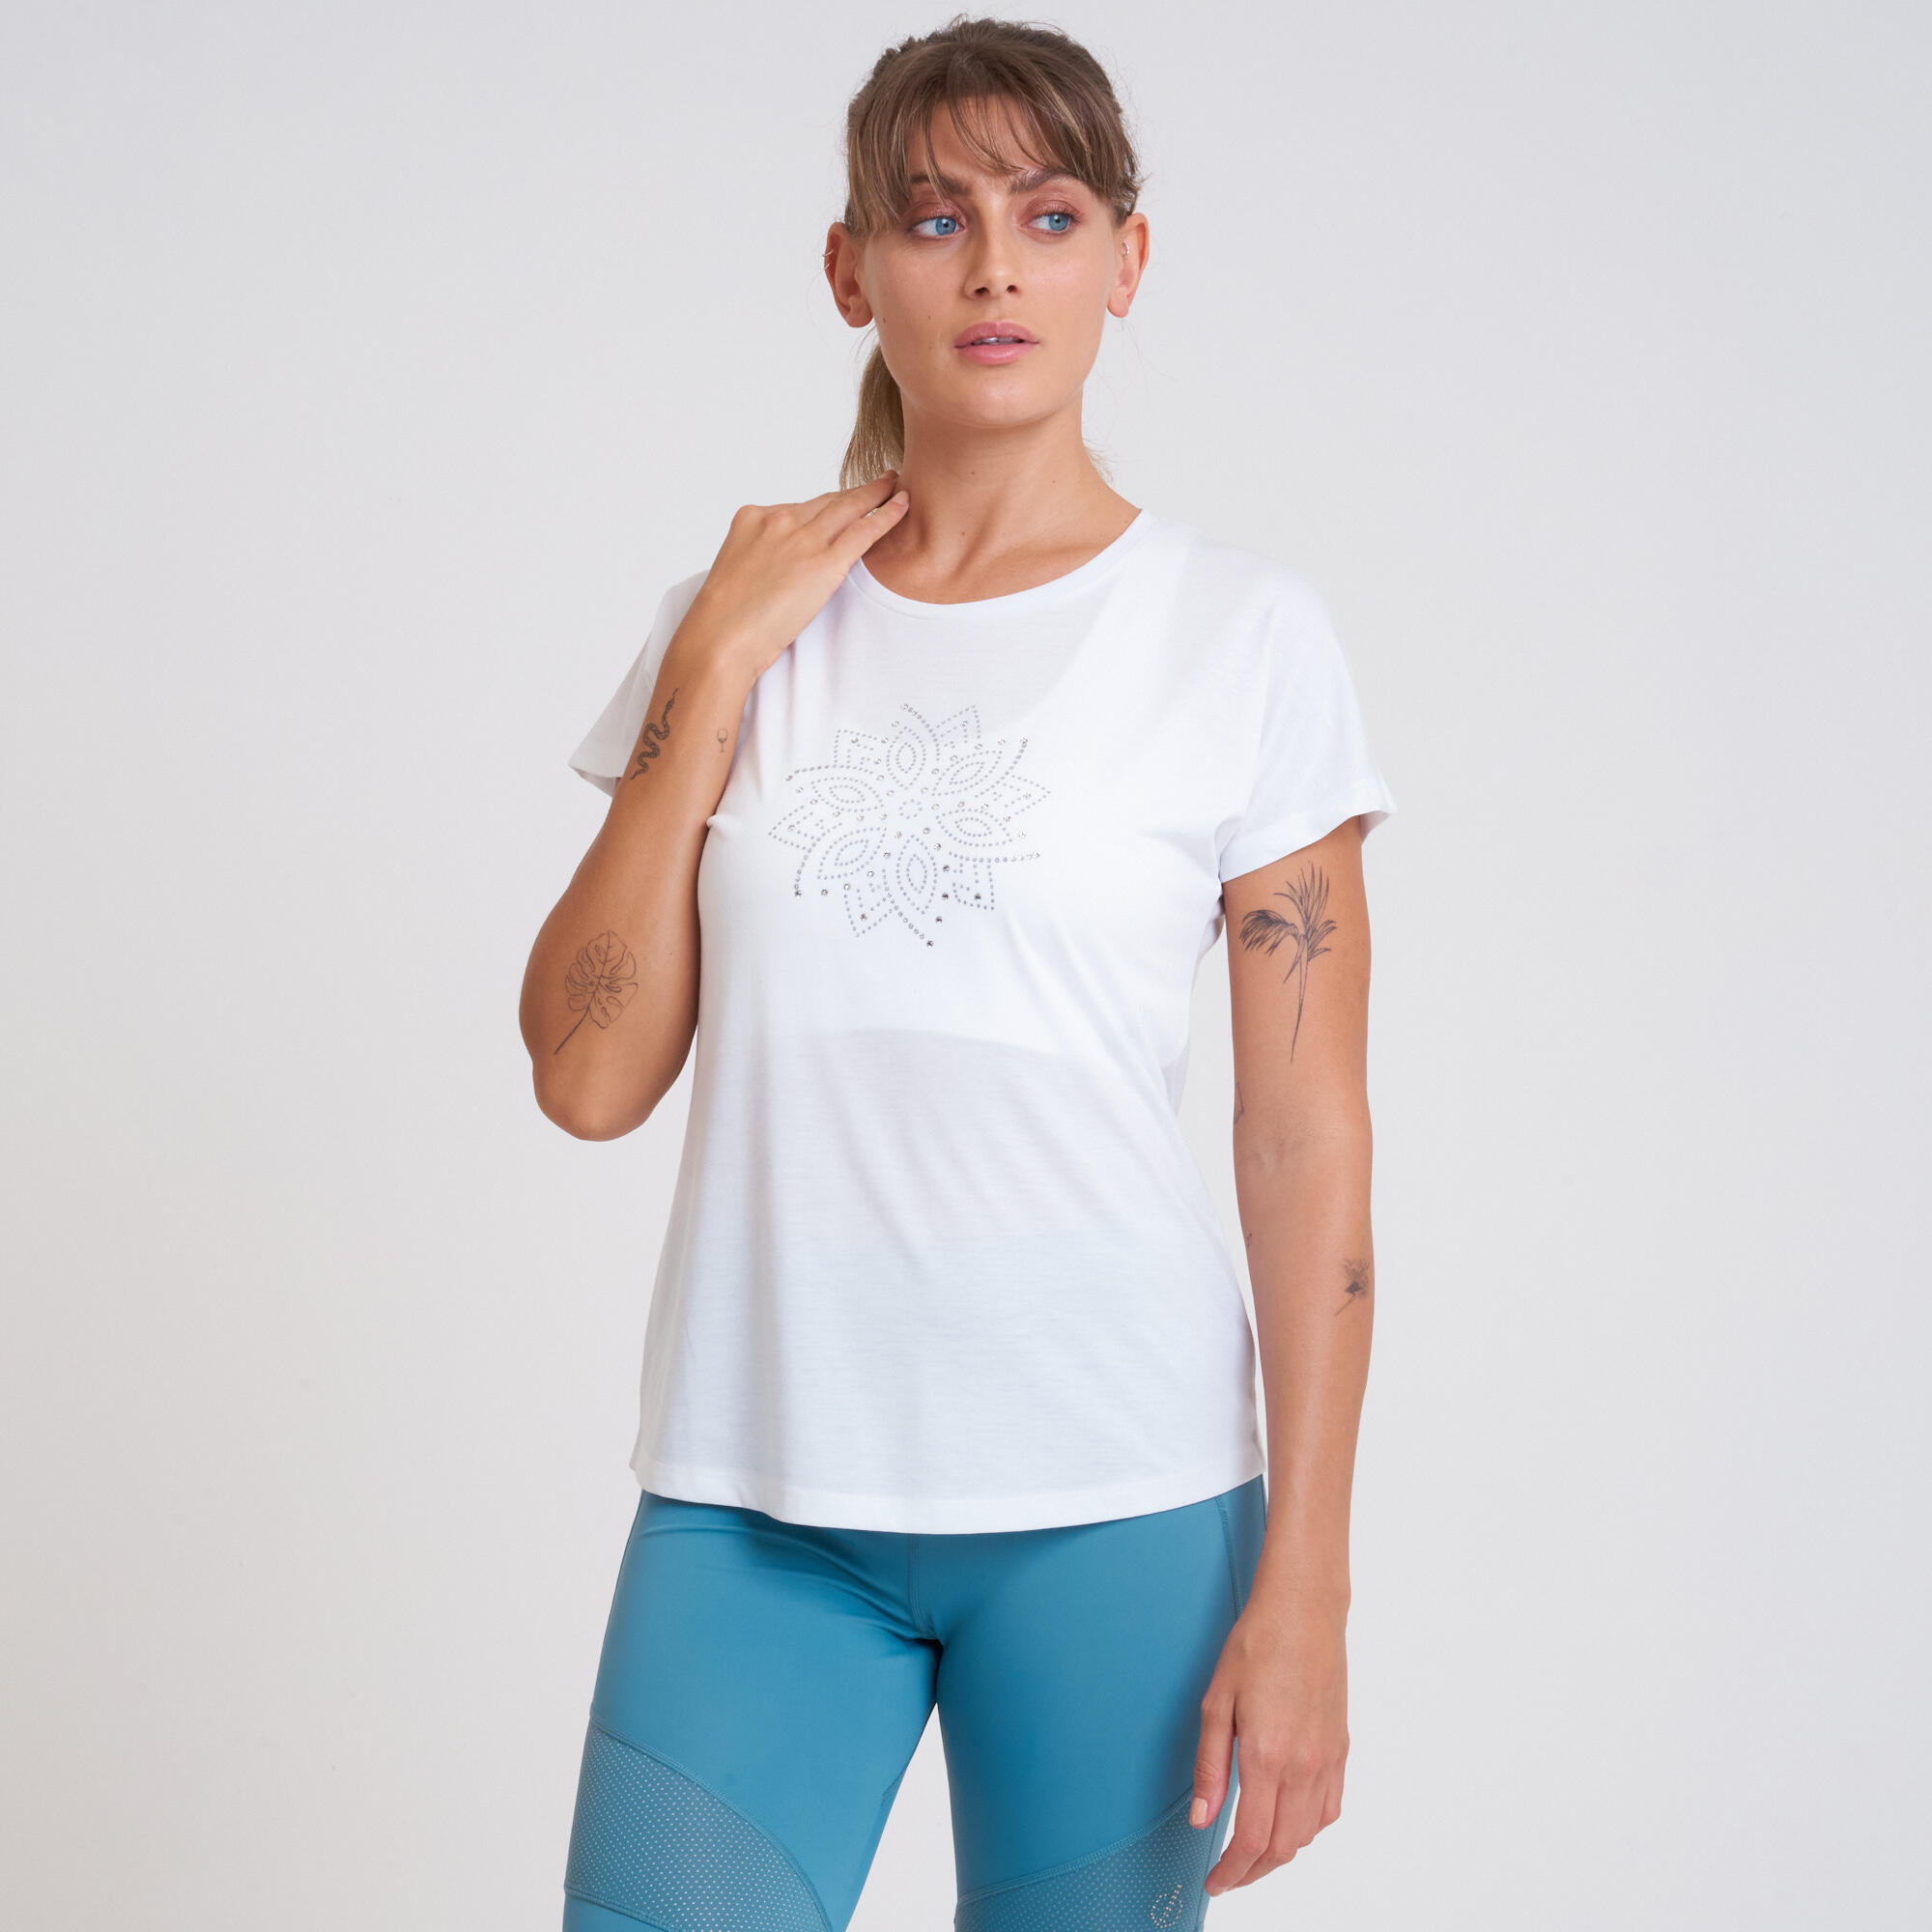 Crystallize Women's Fitness Short Sleeve  T-Shirt - White 1/5